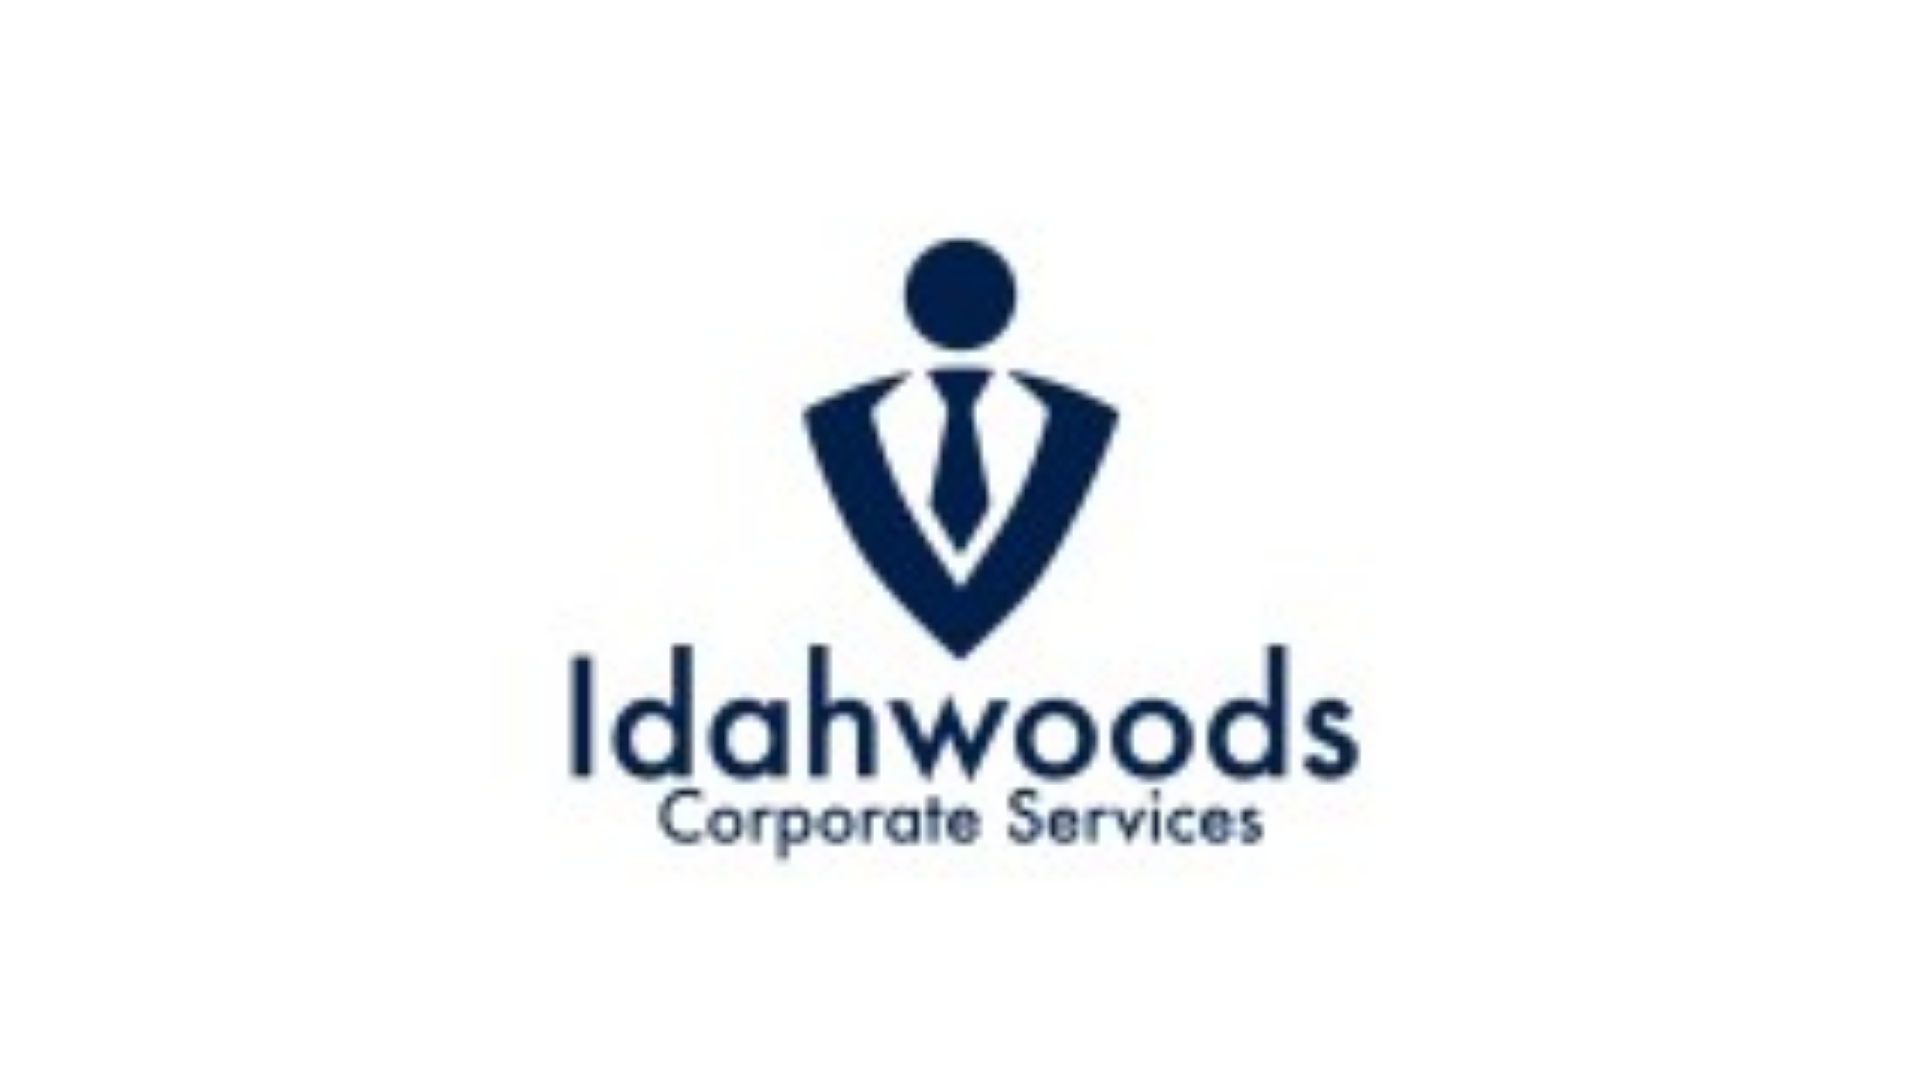 Idahwoods